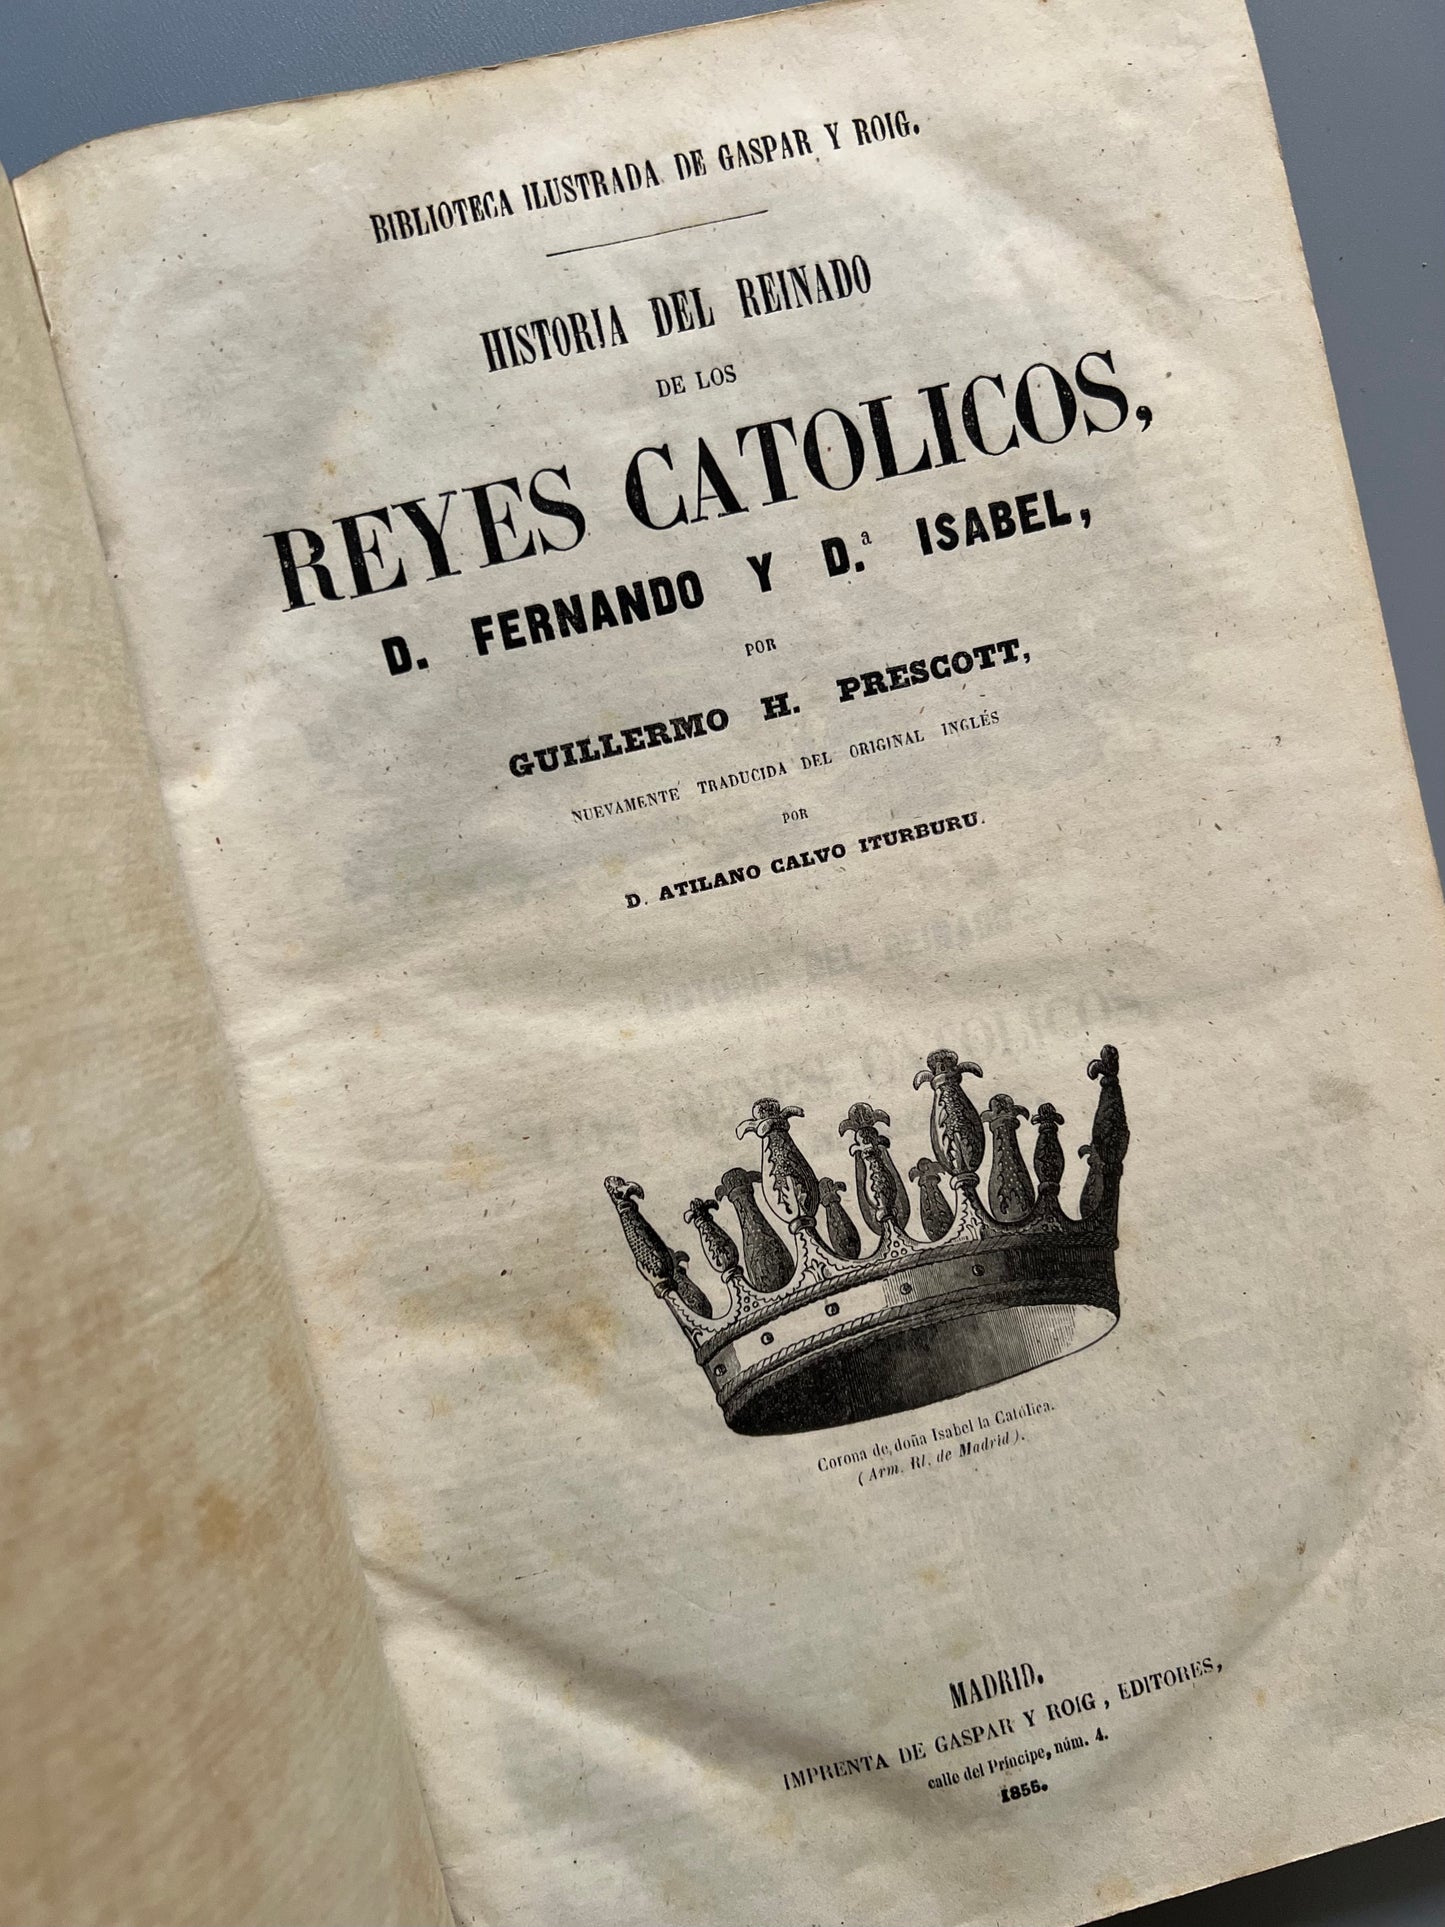 Historia del reinado de los reyes católicos, Guillermo H. Prescott - Gaspar y Roig, 1855